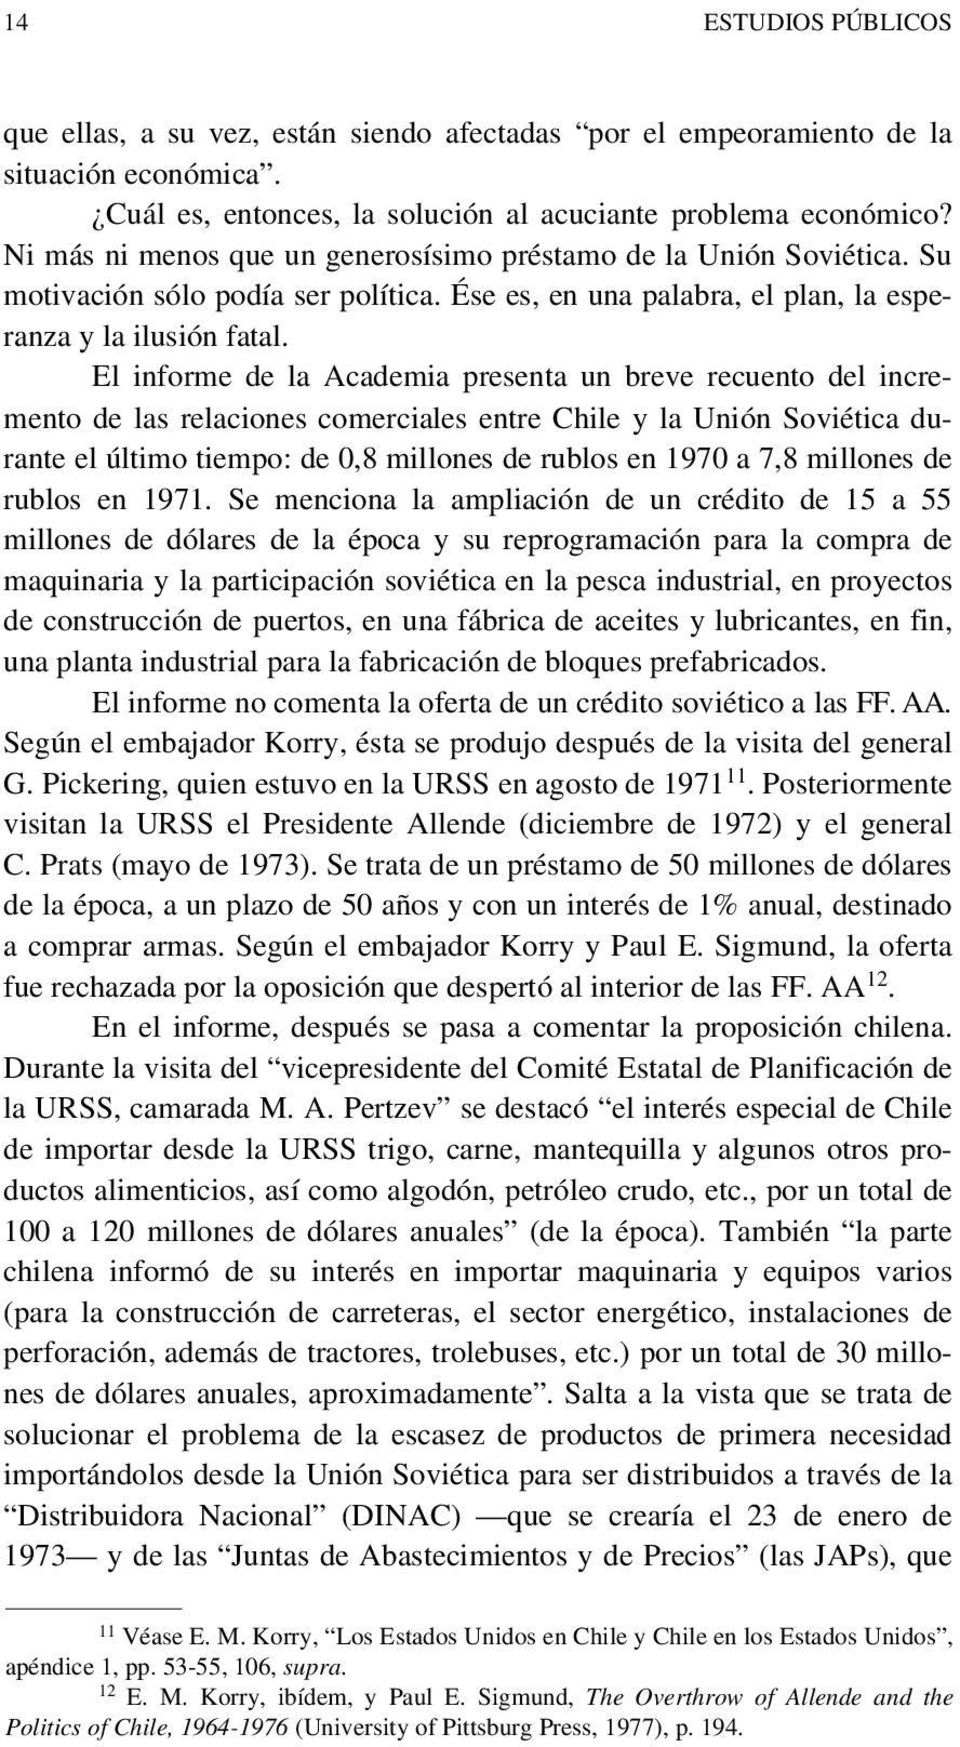 El informe de la Academia presenta un breve recuento del incremento de las relaciones comerciales entre Chile y la Unión Soviética durante el último tiempo: de 0,8 millones de rublos en 1970 a 7,8